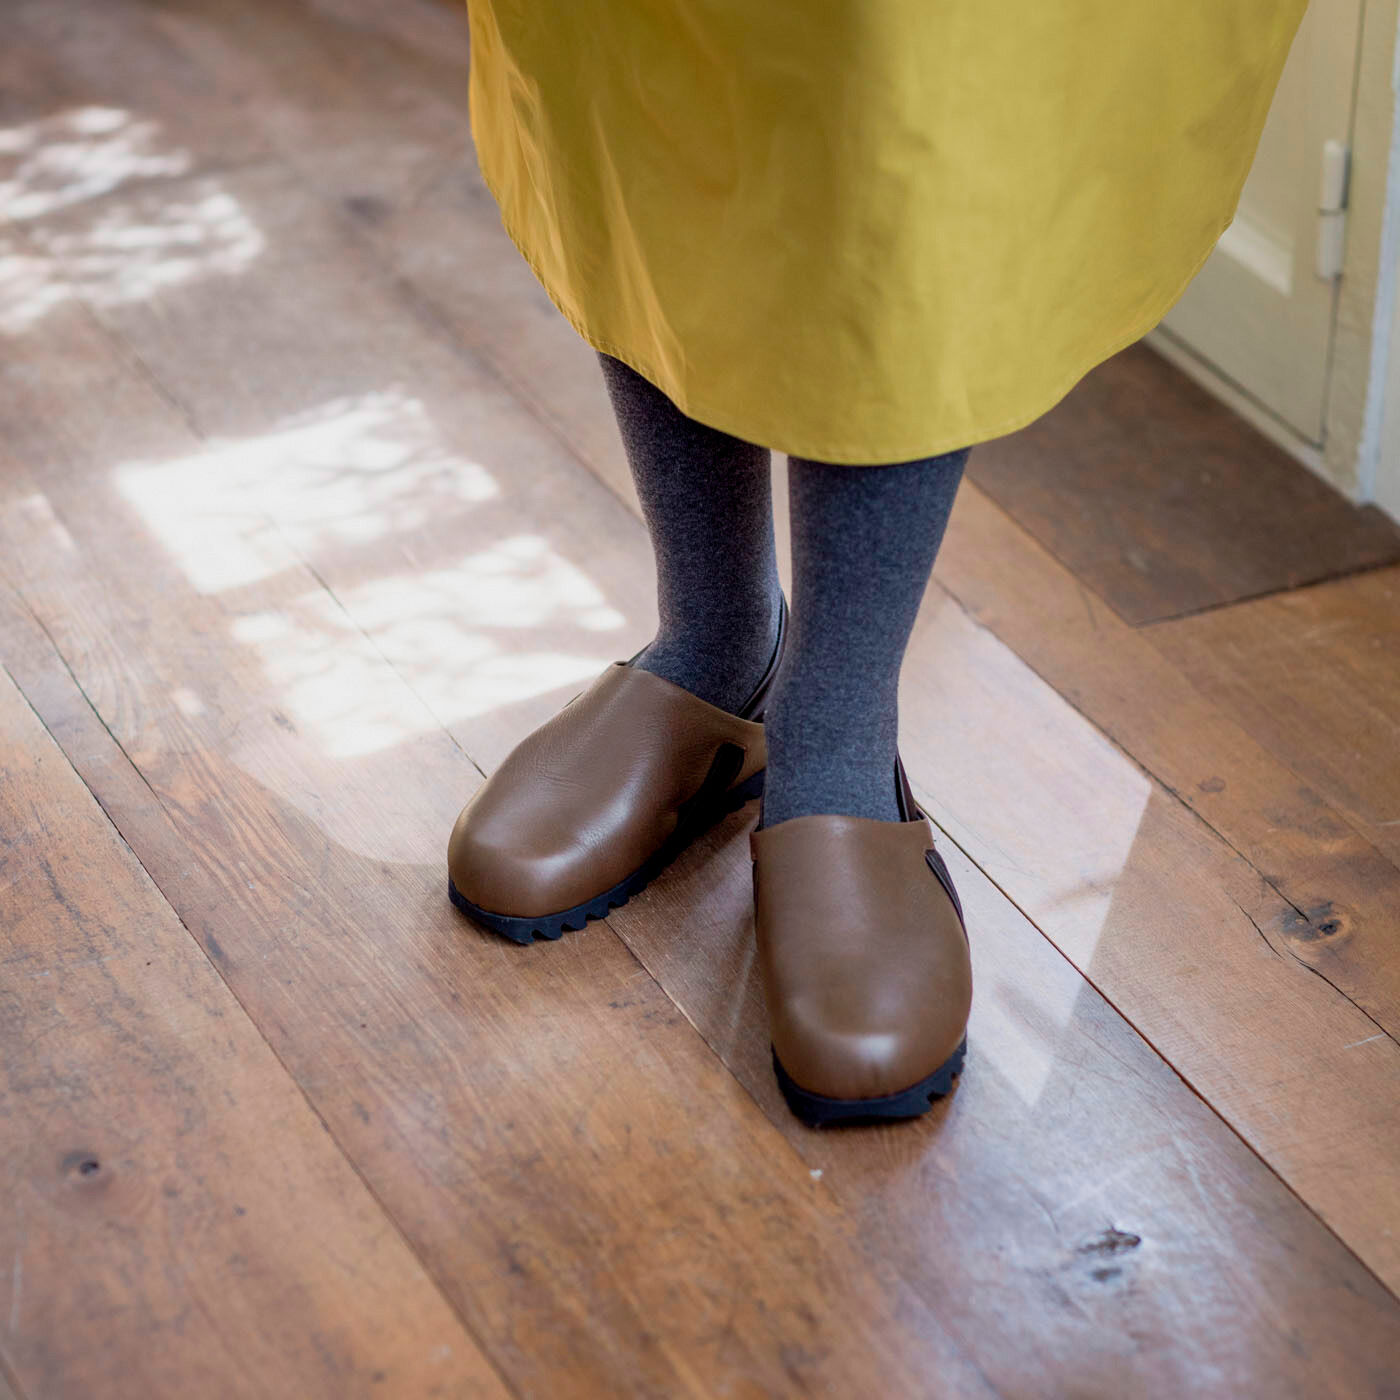 ＆Stories|長田の靴職人が作った　職人本革のパニーニサボシューズ〈ショコラ色〉|「パニーニ」みたいな丸みフォルムが特徴。厚手の秋冬アウターともバランスが取りやすい、ほどよいボリューム感。